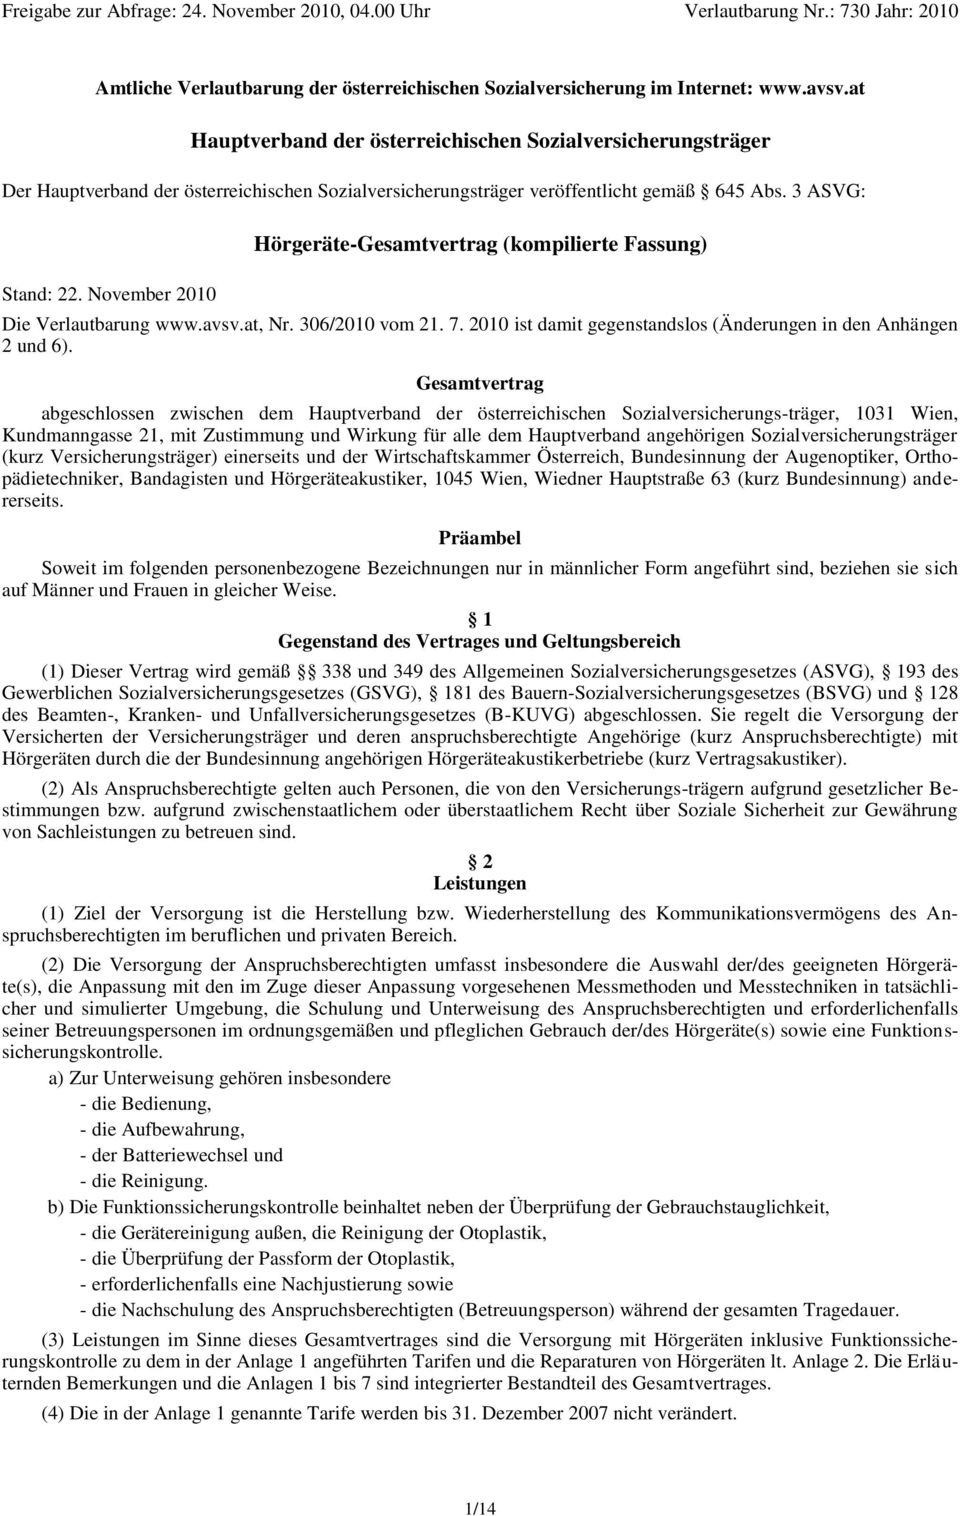 November 2010 Hörgeräte-Gesamtvertrag (kompilierte Fassung) Die Verlautbarung www.avsv.at, Nr. 306/2010 vom 21. 7. 2010 ist damit gegenstandslos (Änderungen in den Anhängen 2 und 6).